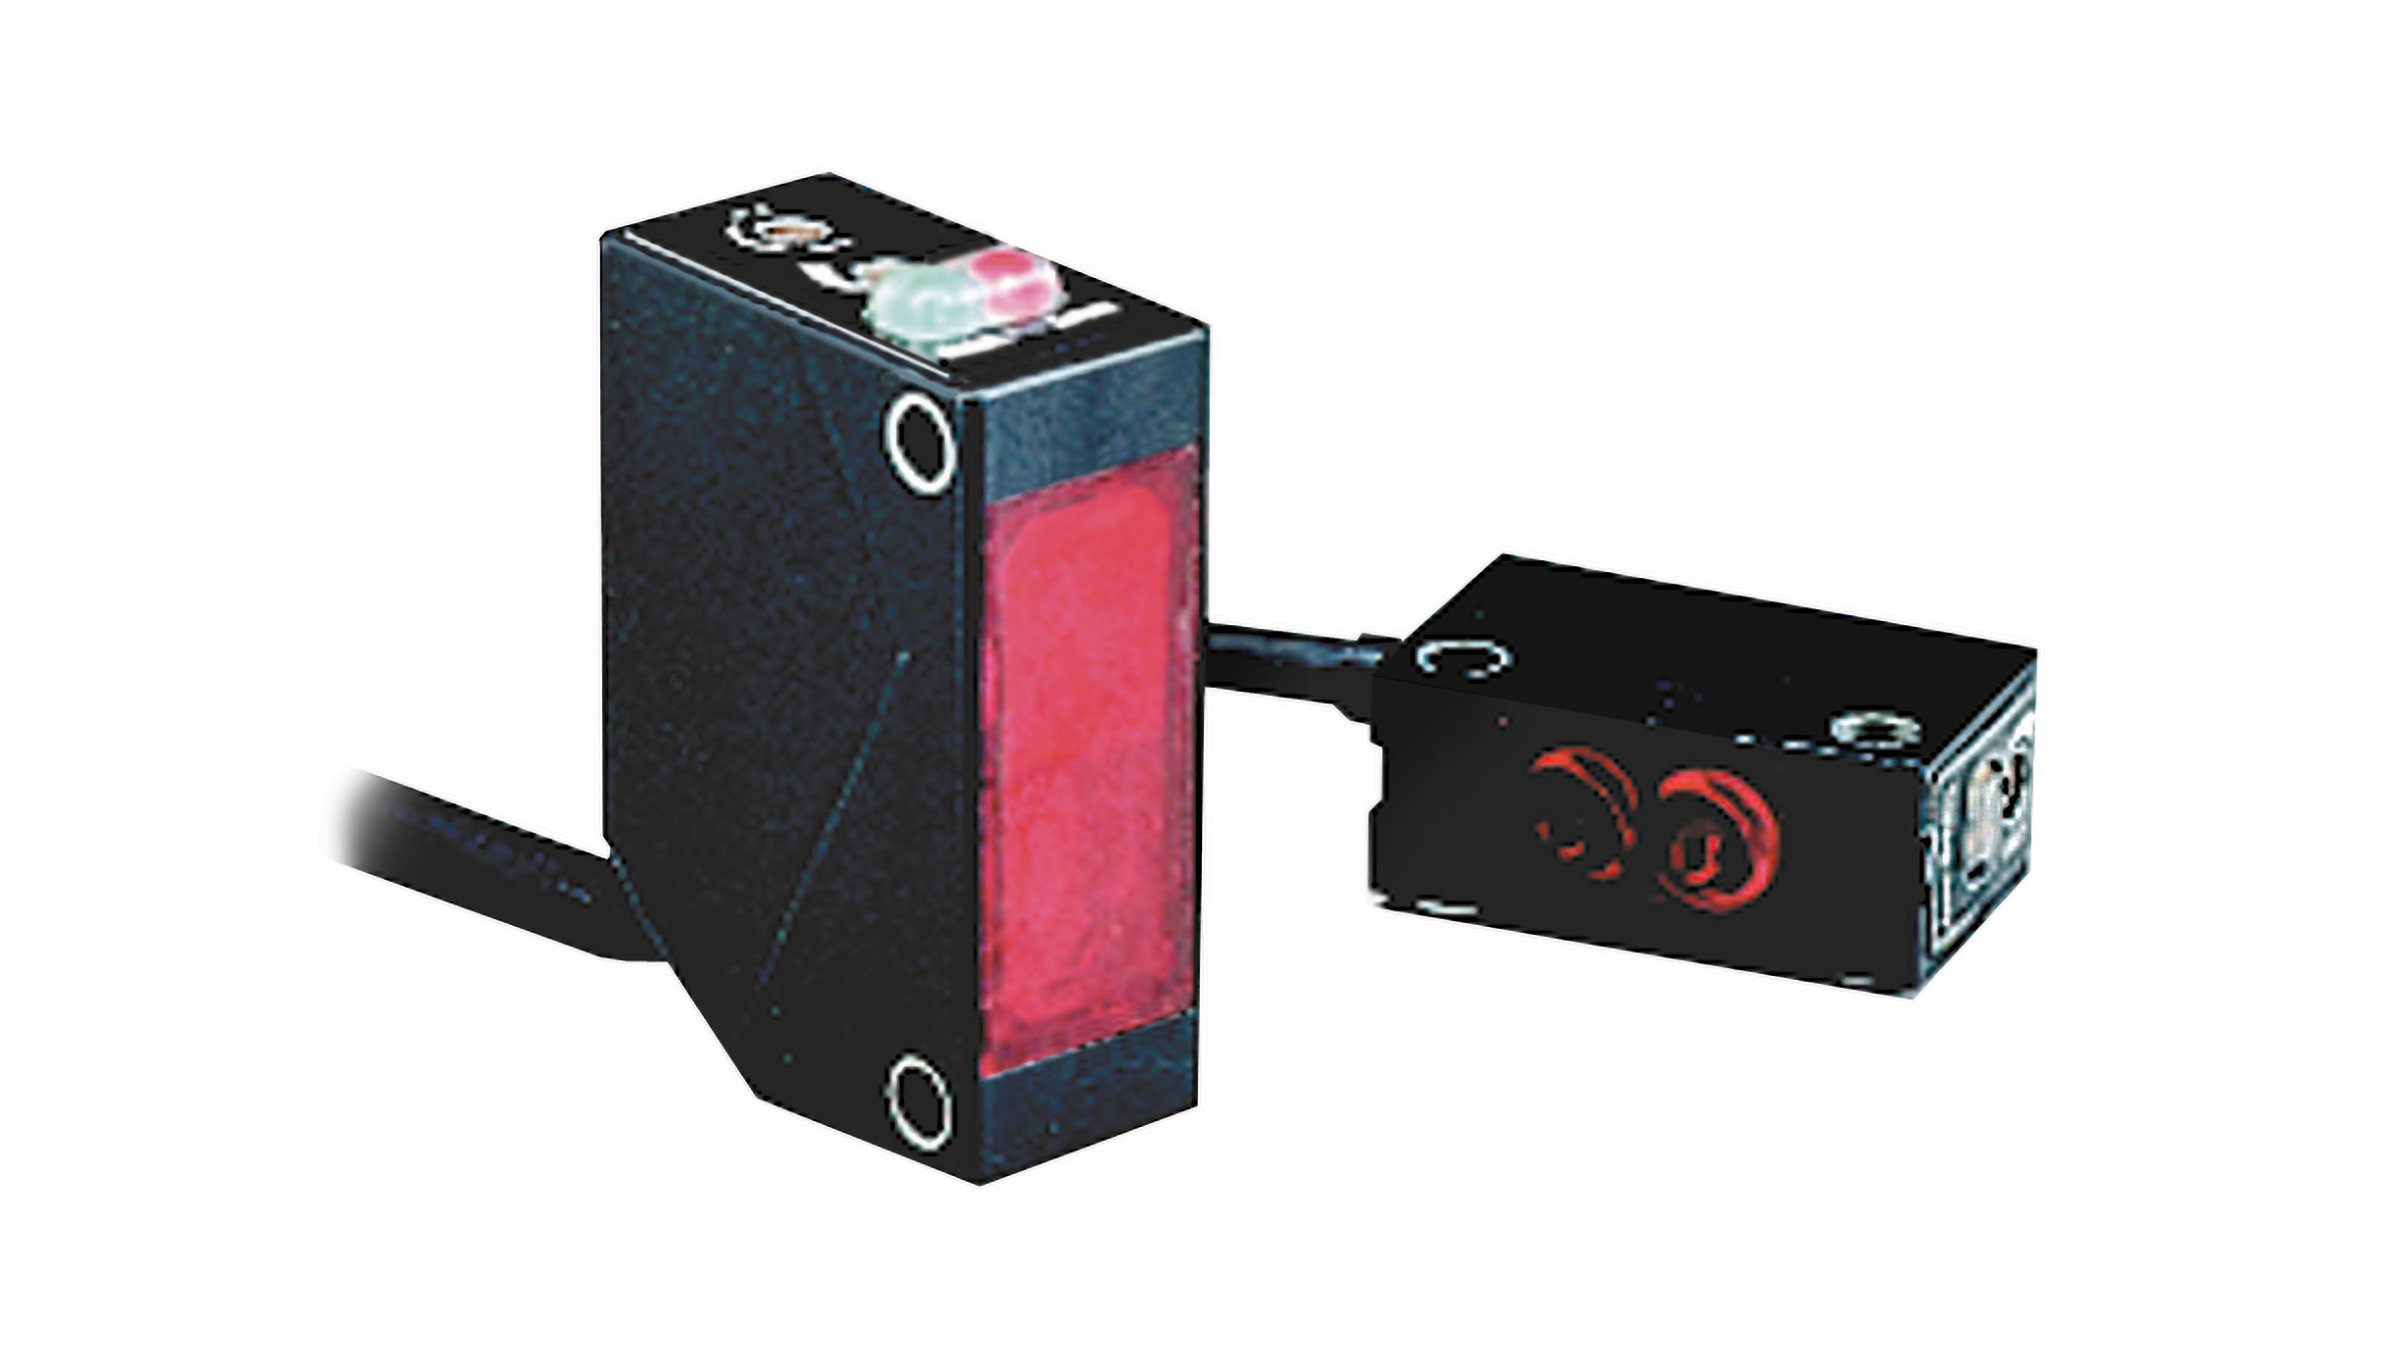 Sensor negro rectangular Allen-Bradley con cable integrado, superficie de detección roja en el costado e indicadores LED rojos y verdes en la parte superior.